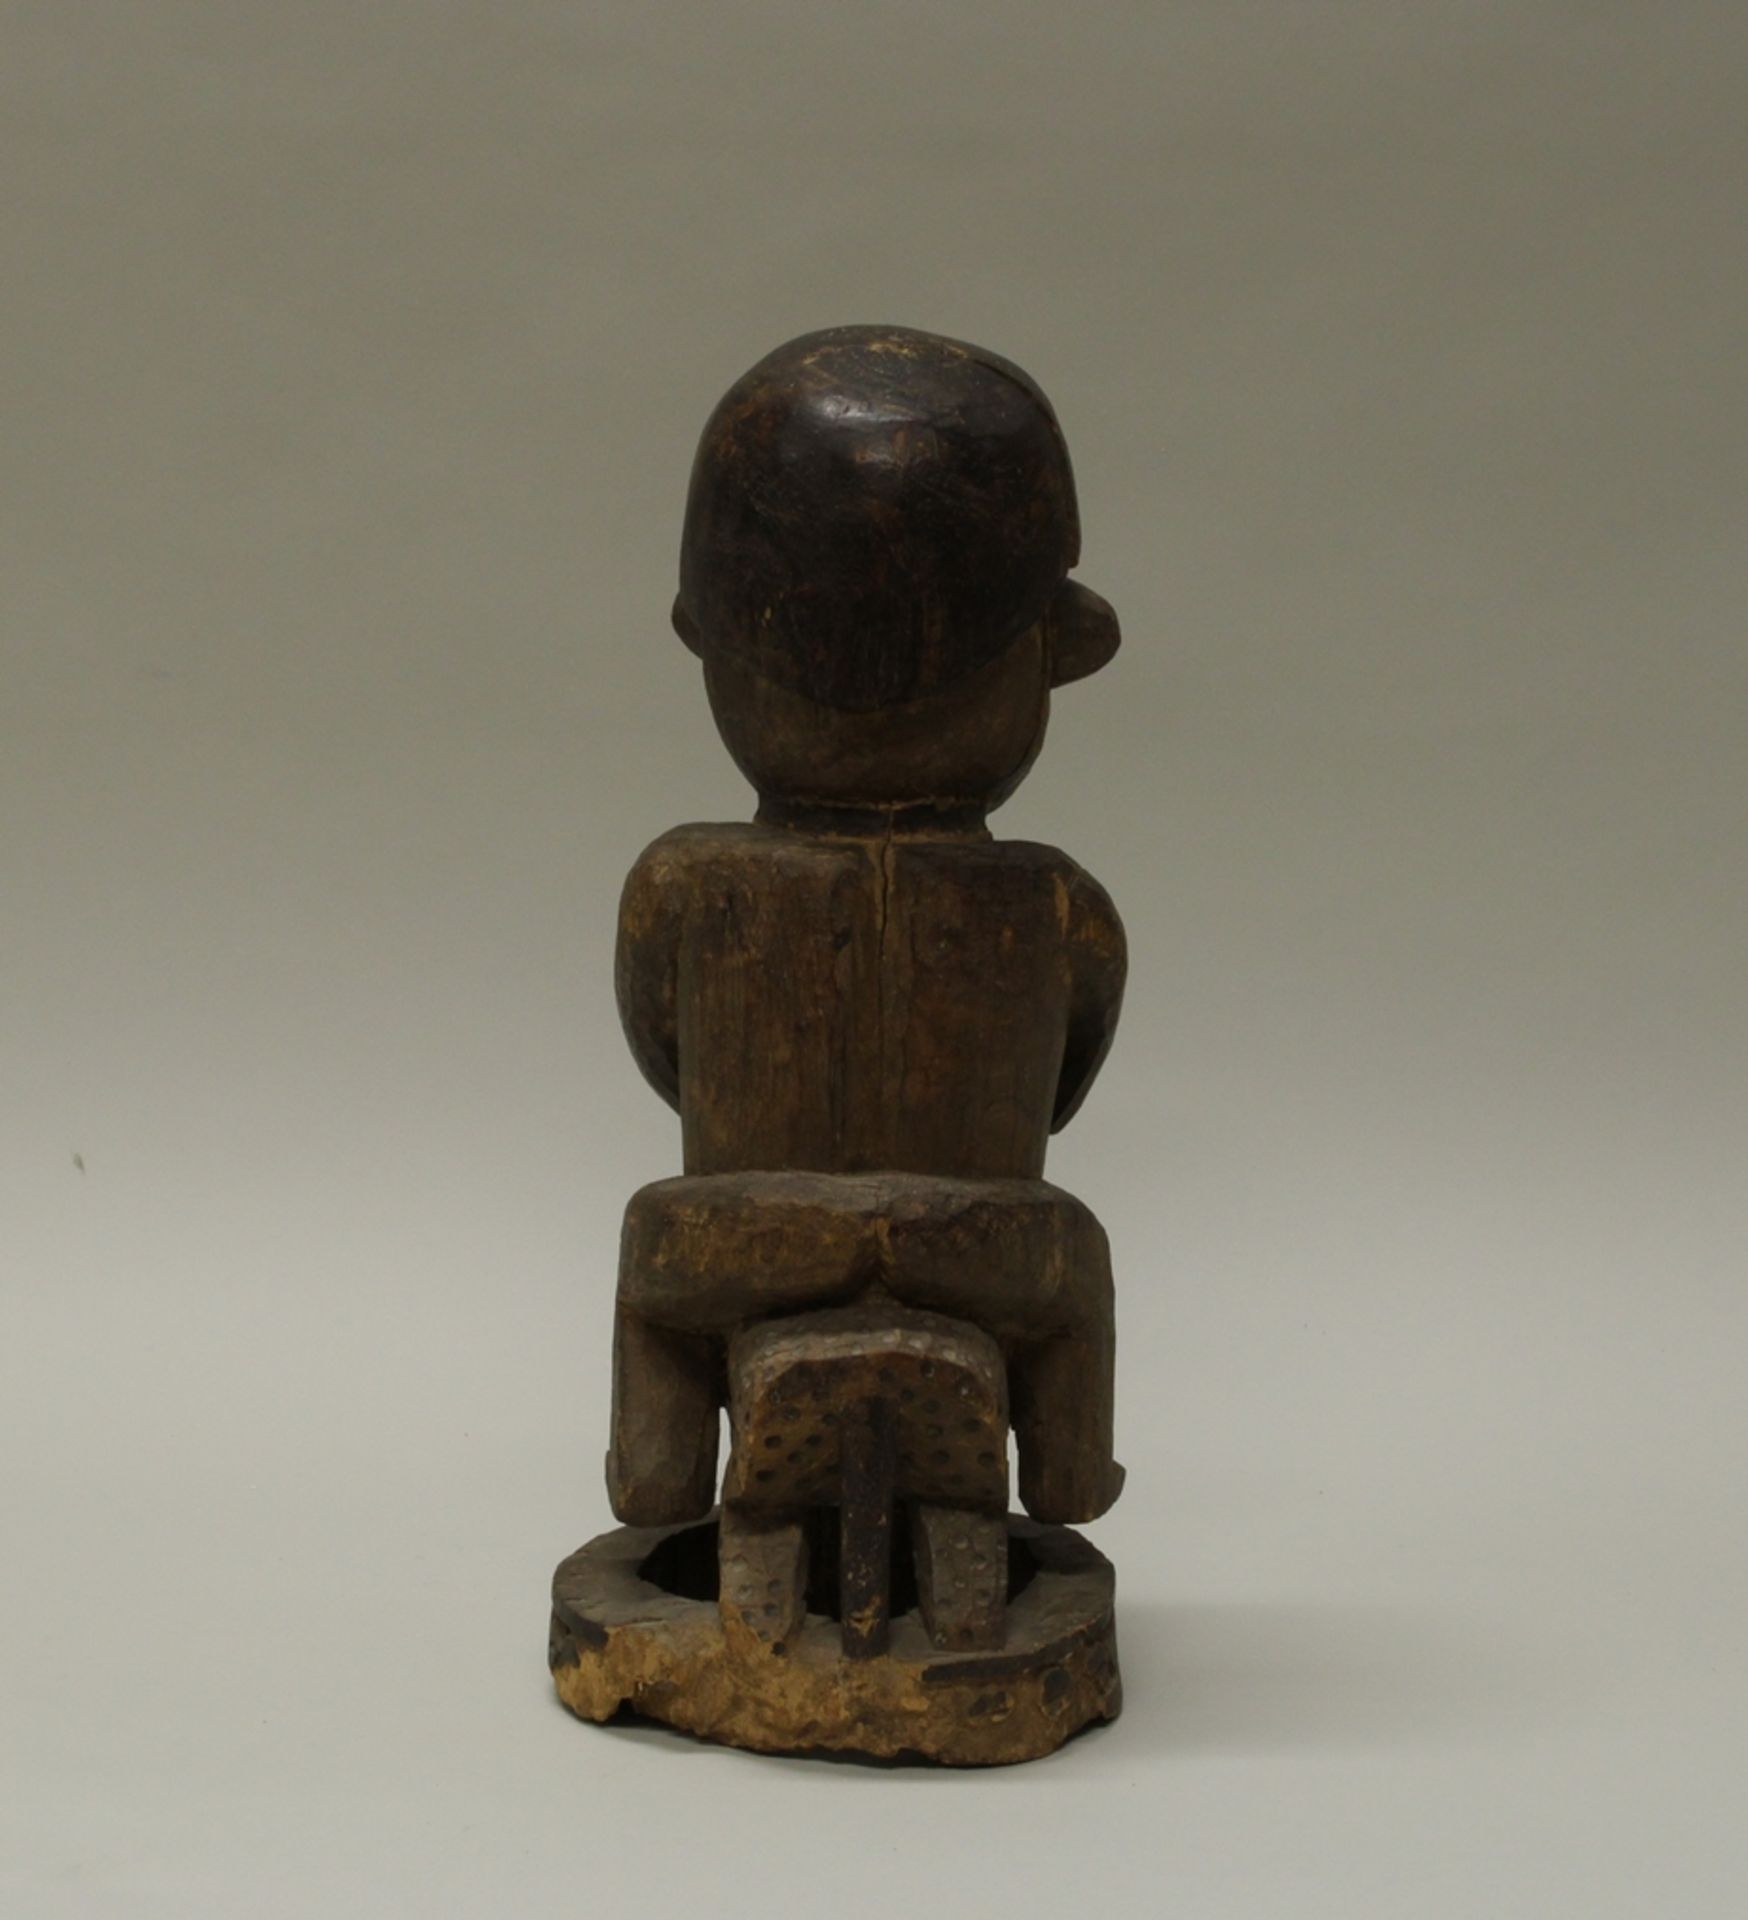 Figur, "Reiter", Kamerun, Afrika, authentisch, Holz, 47 cm hoch, hinten am Sockel Termitenfraß. - Bild 3 aus 5